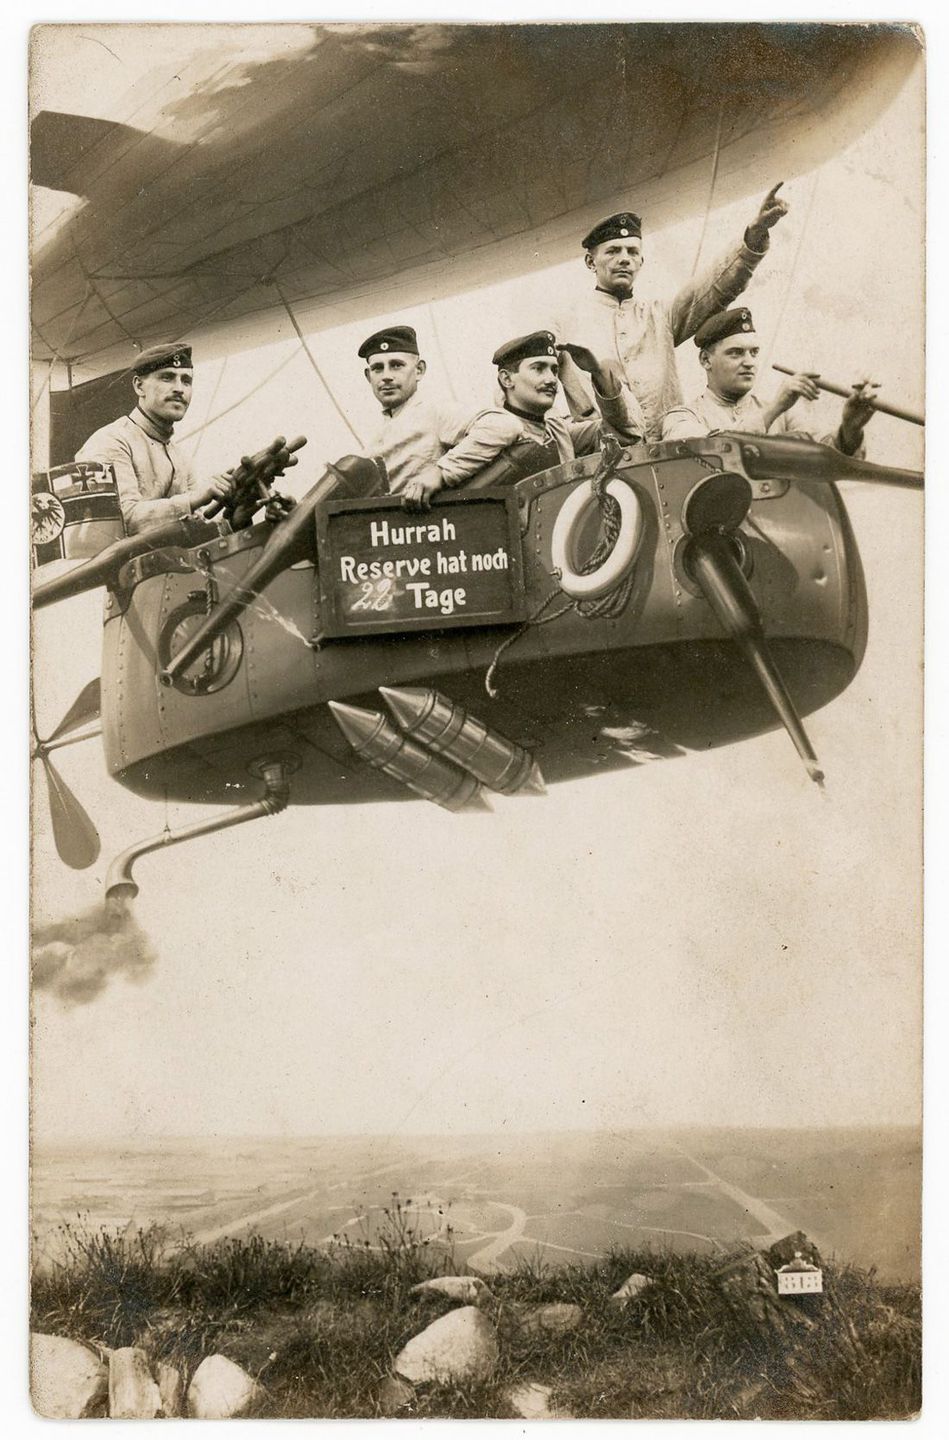 Армейский юмор и возможности мастеров фотошопа в фотографиях 1912-1945 годов 4